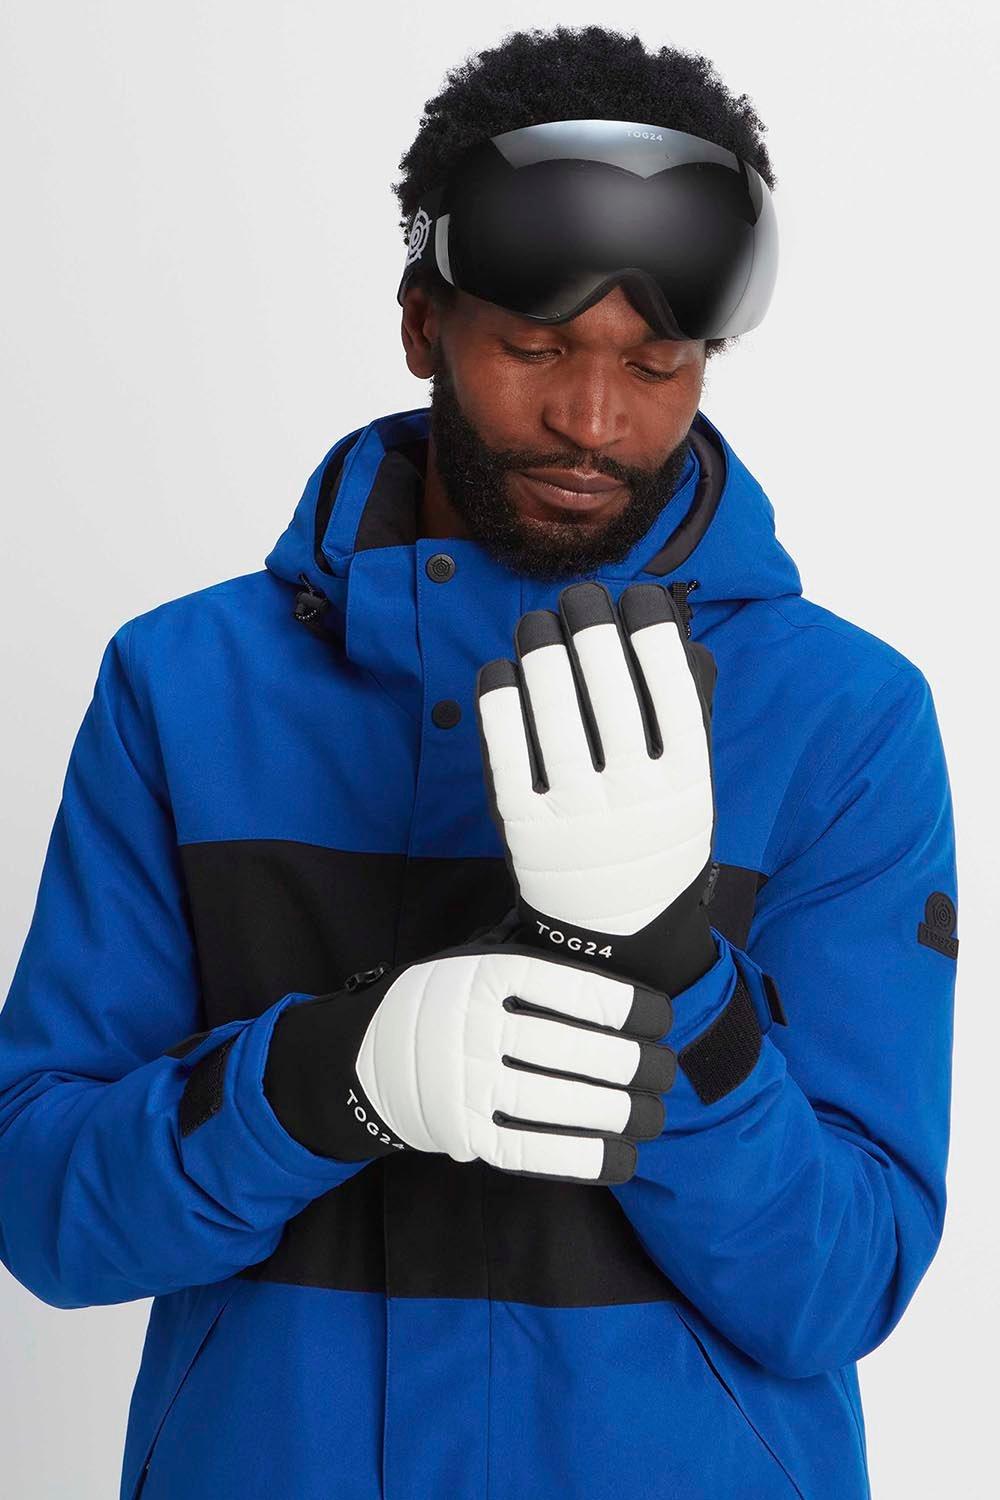 цена Водонепроницаемые лыжные перчатки Adventure TOG24, белый